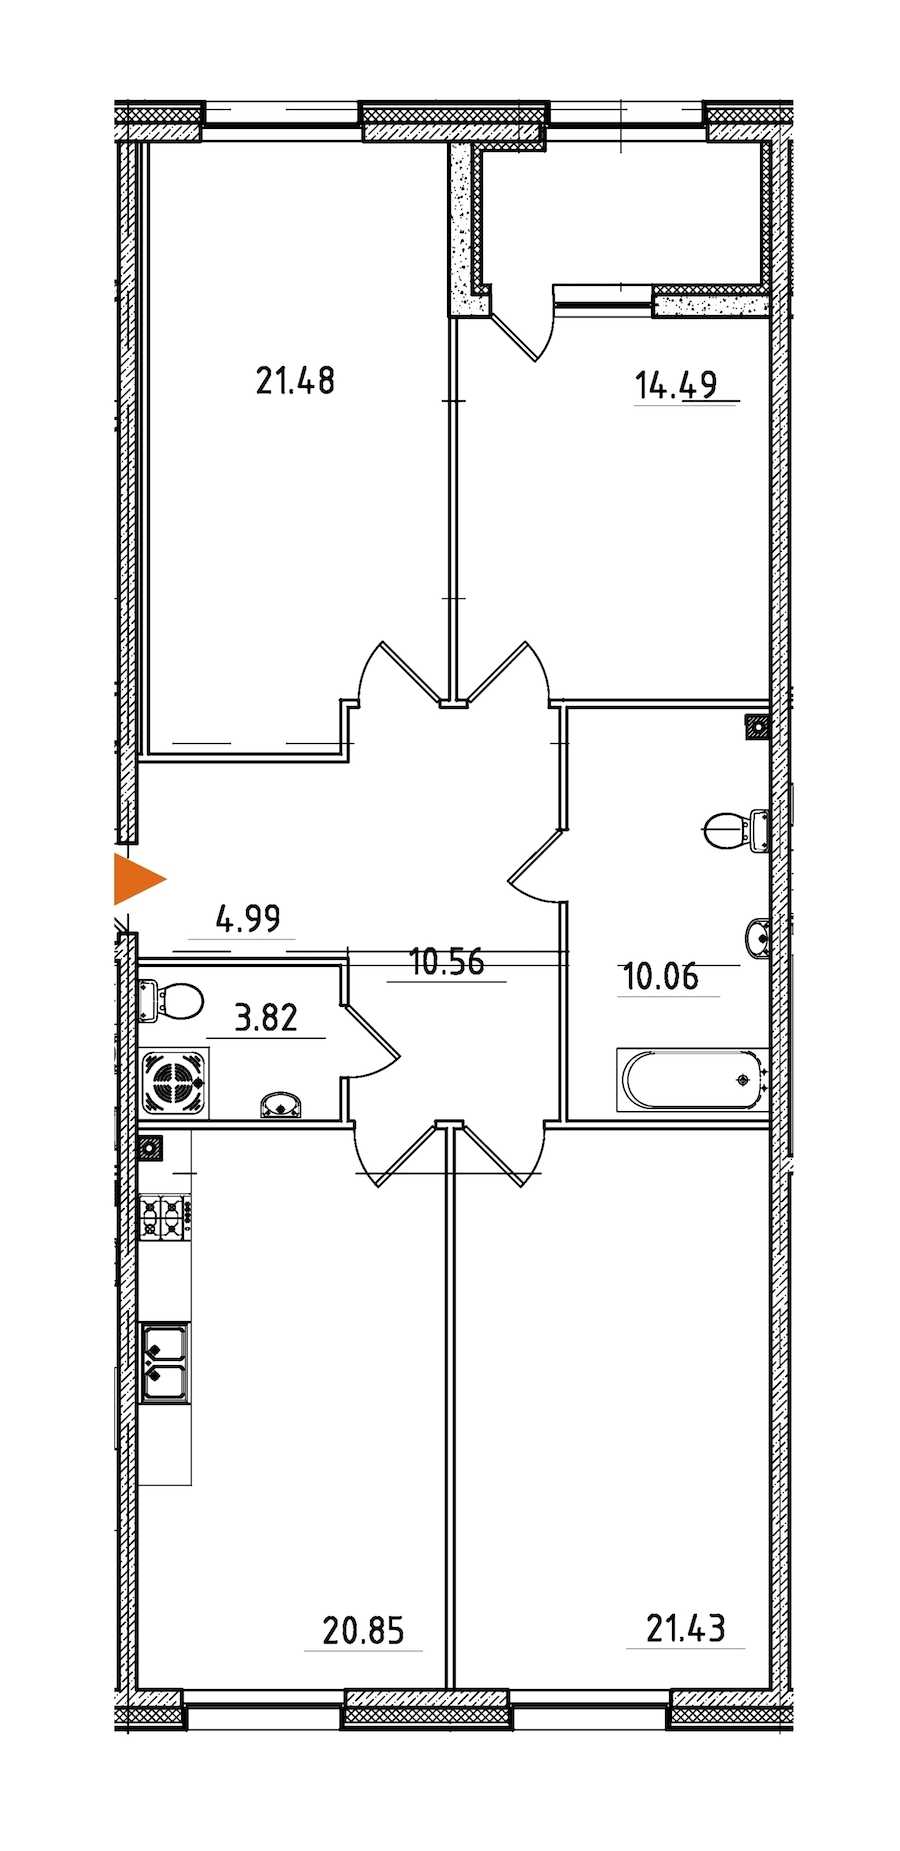 Трехкомнатная квартира в : площадь 110.09 м2 , этаж: 2 – купить в Санкт-Петербурге